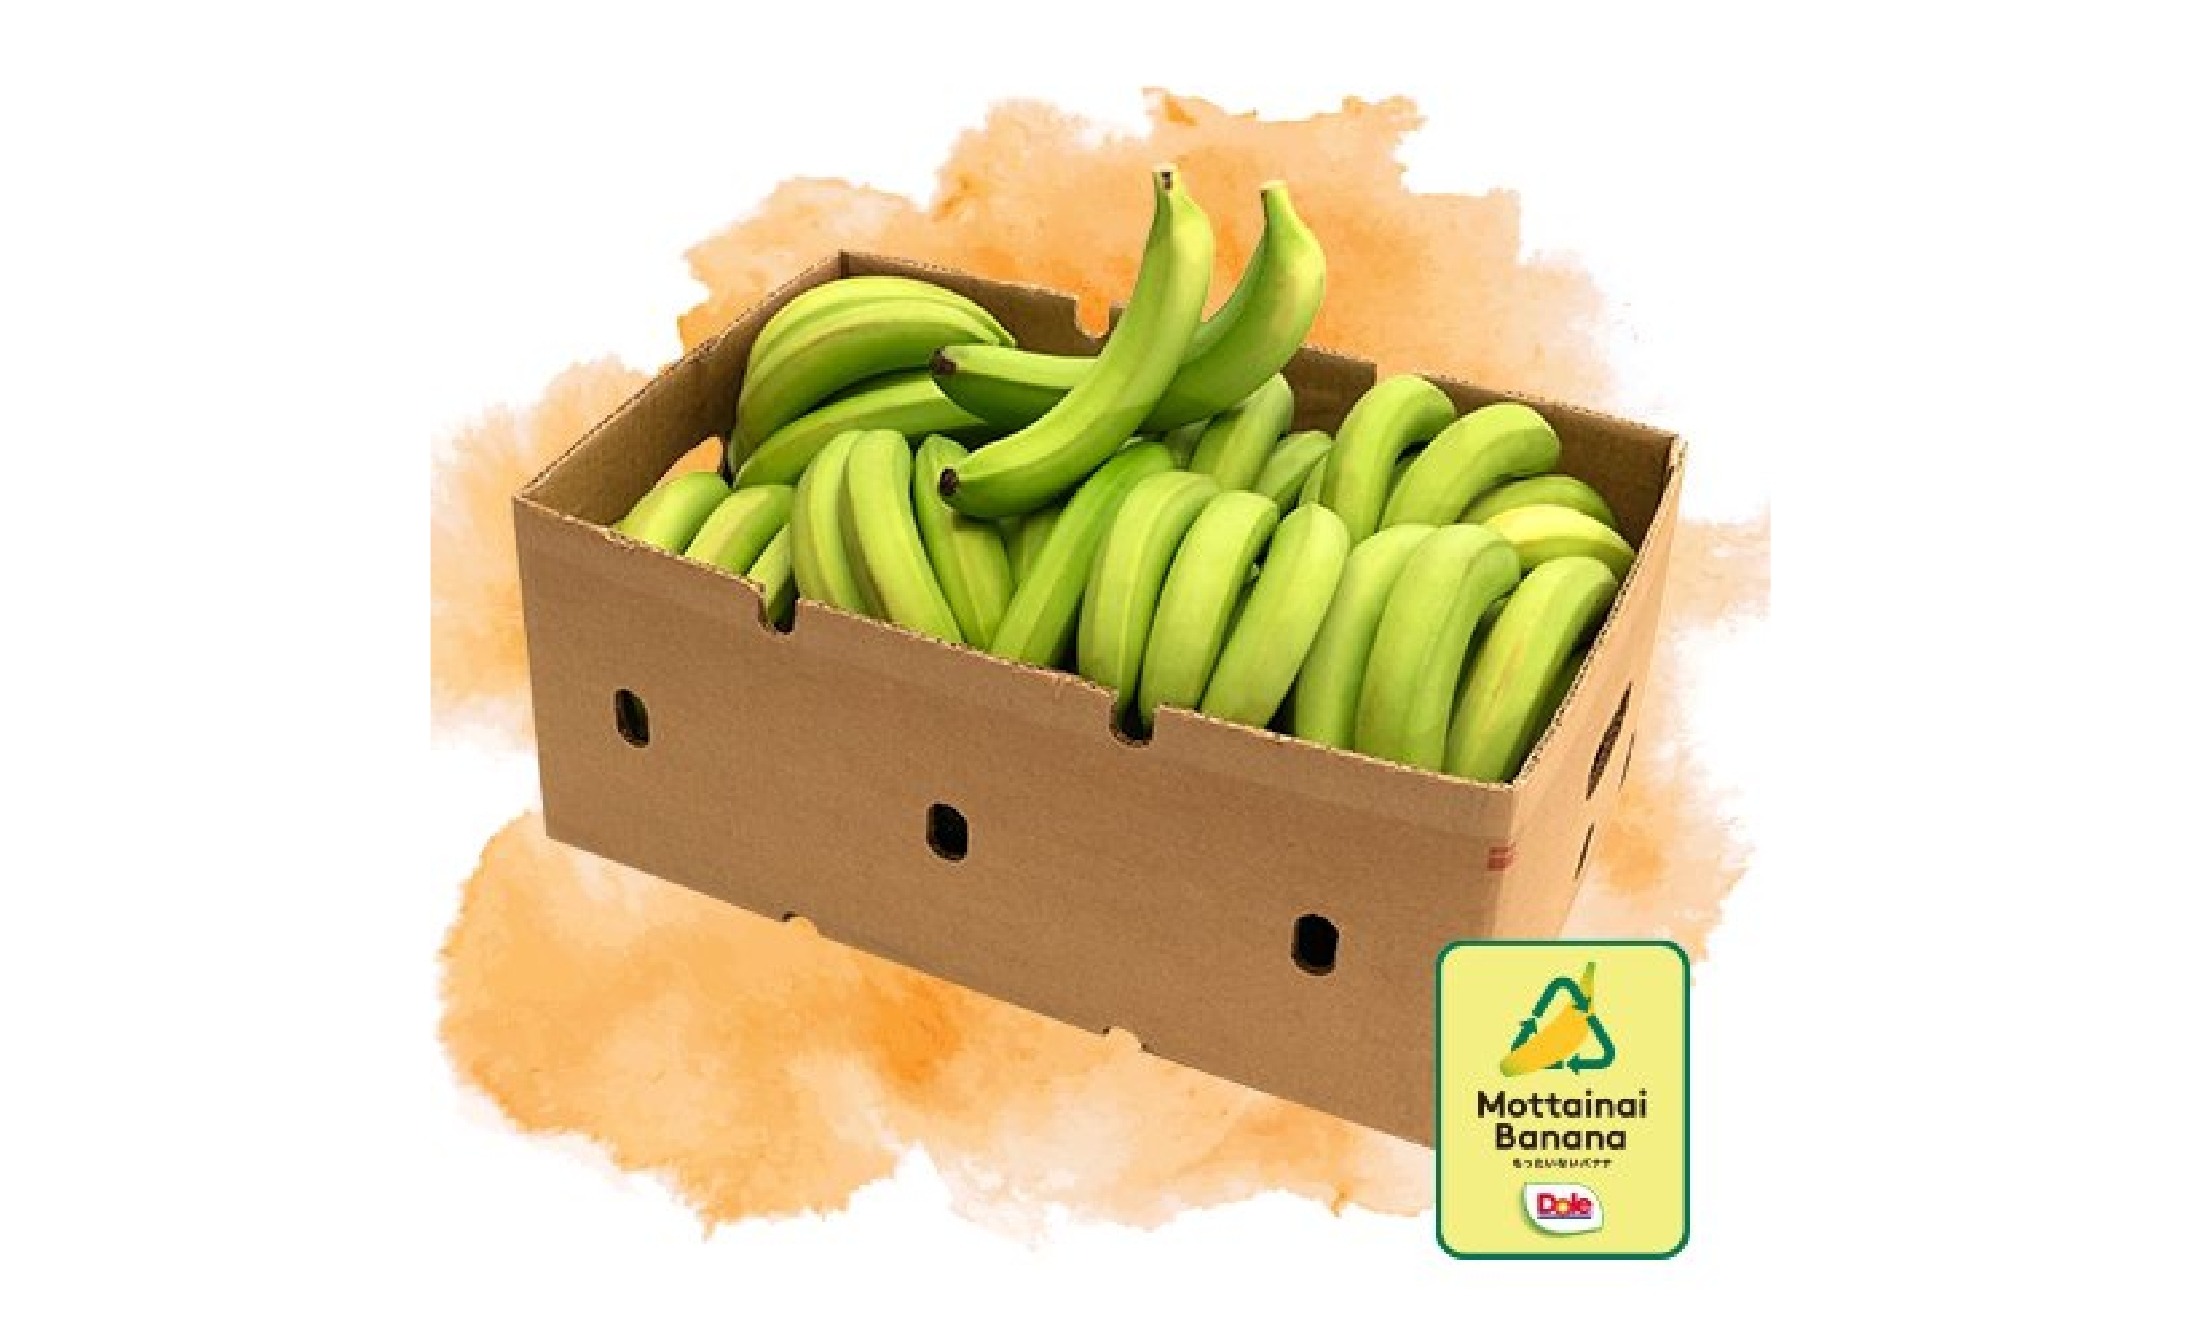 green-banana